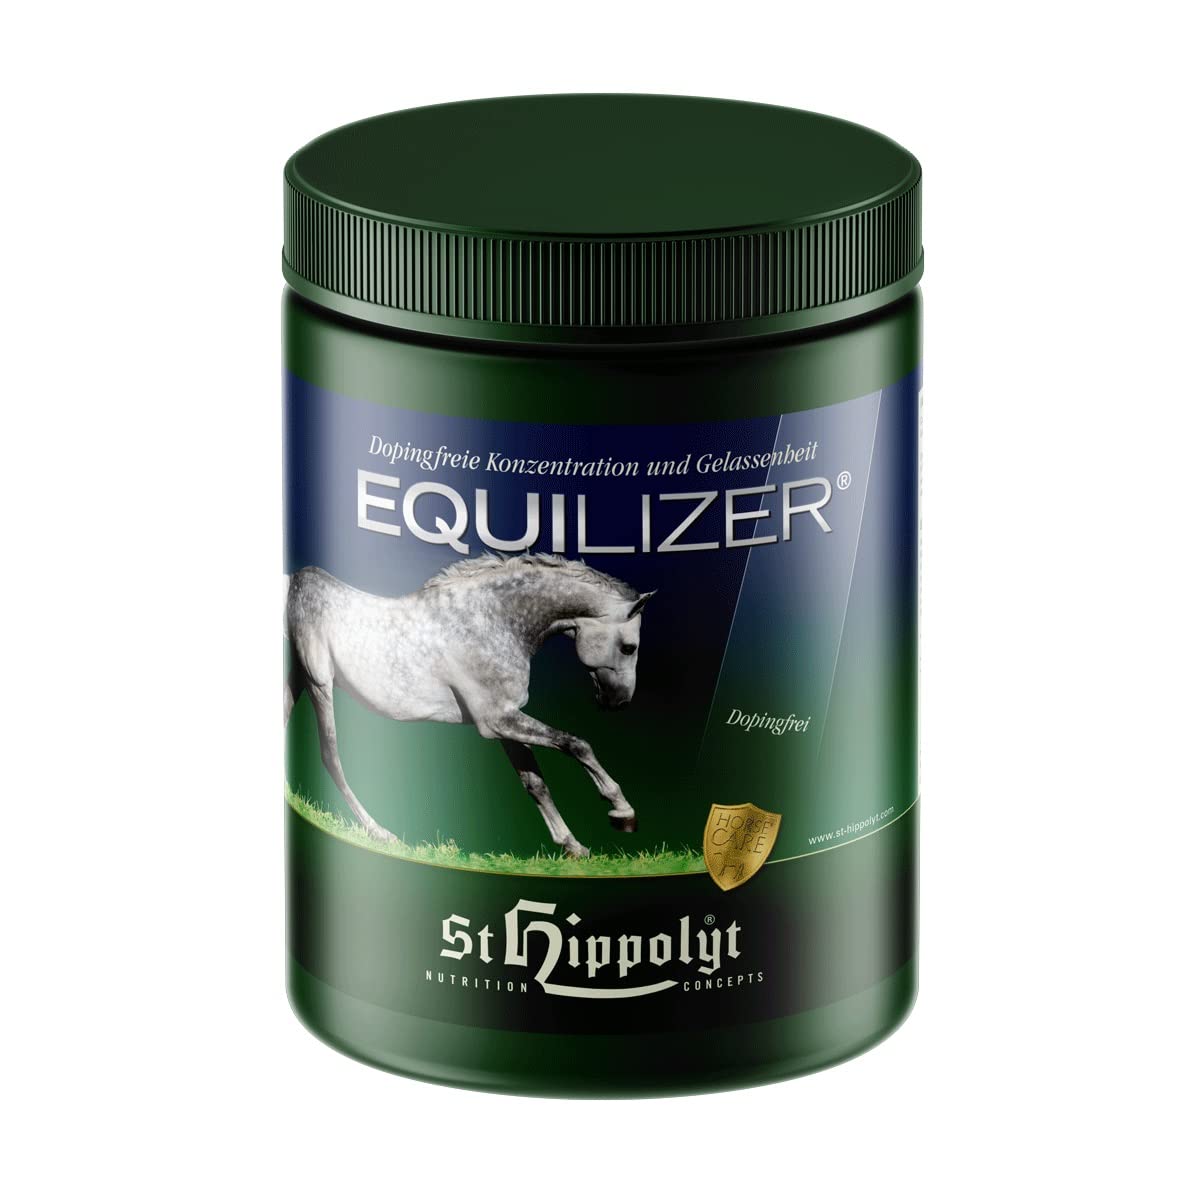 St. Hippolyt Equilizer 2,5 kg